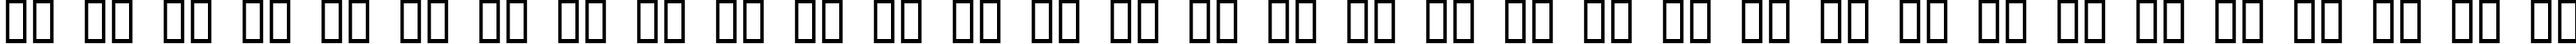 Пример написания русского алфавита шрифтом Digital Readout Thick